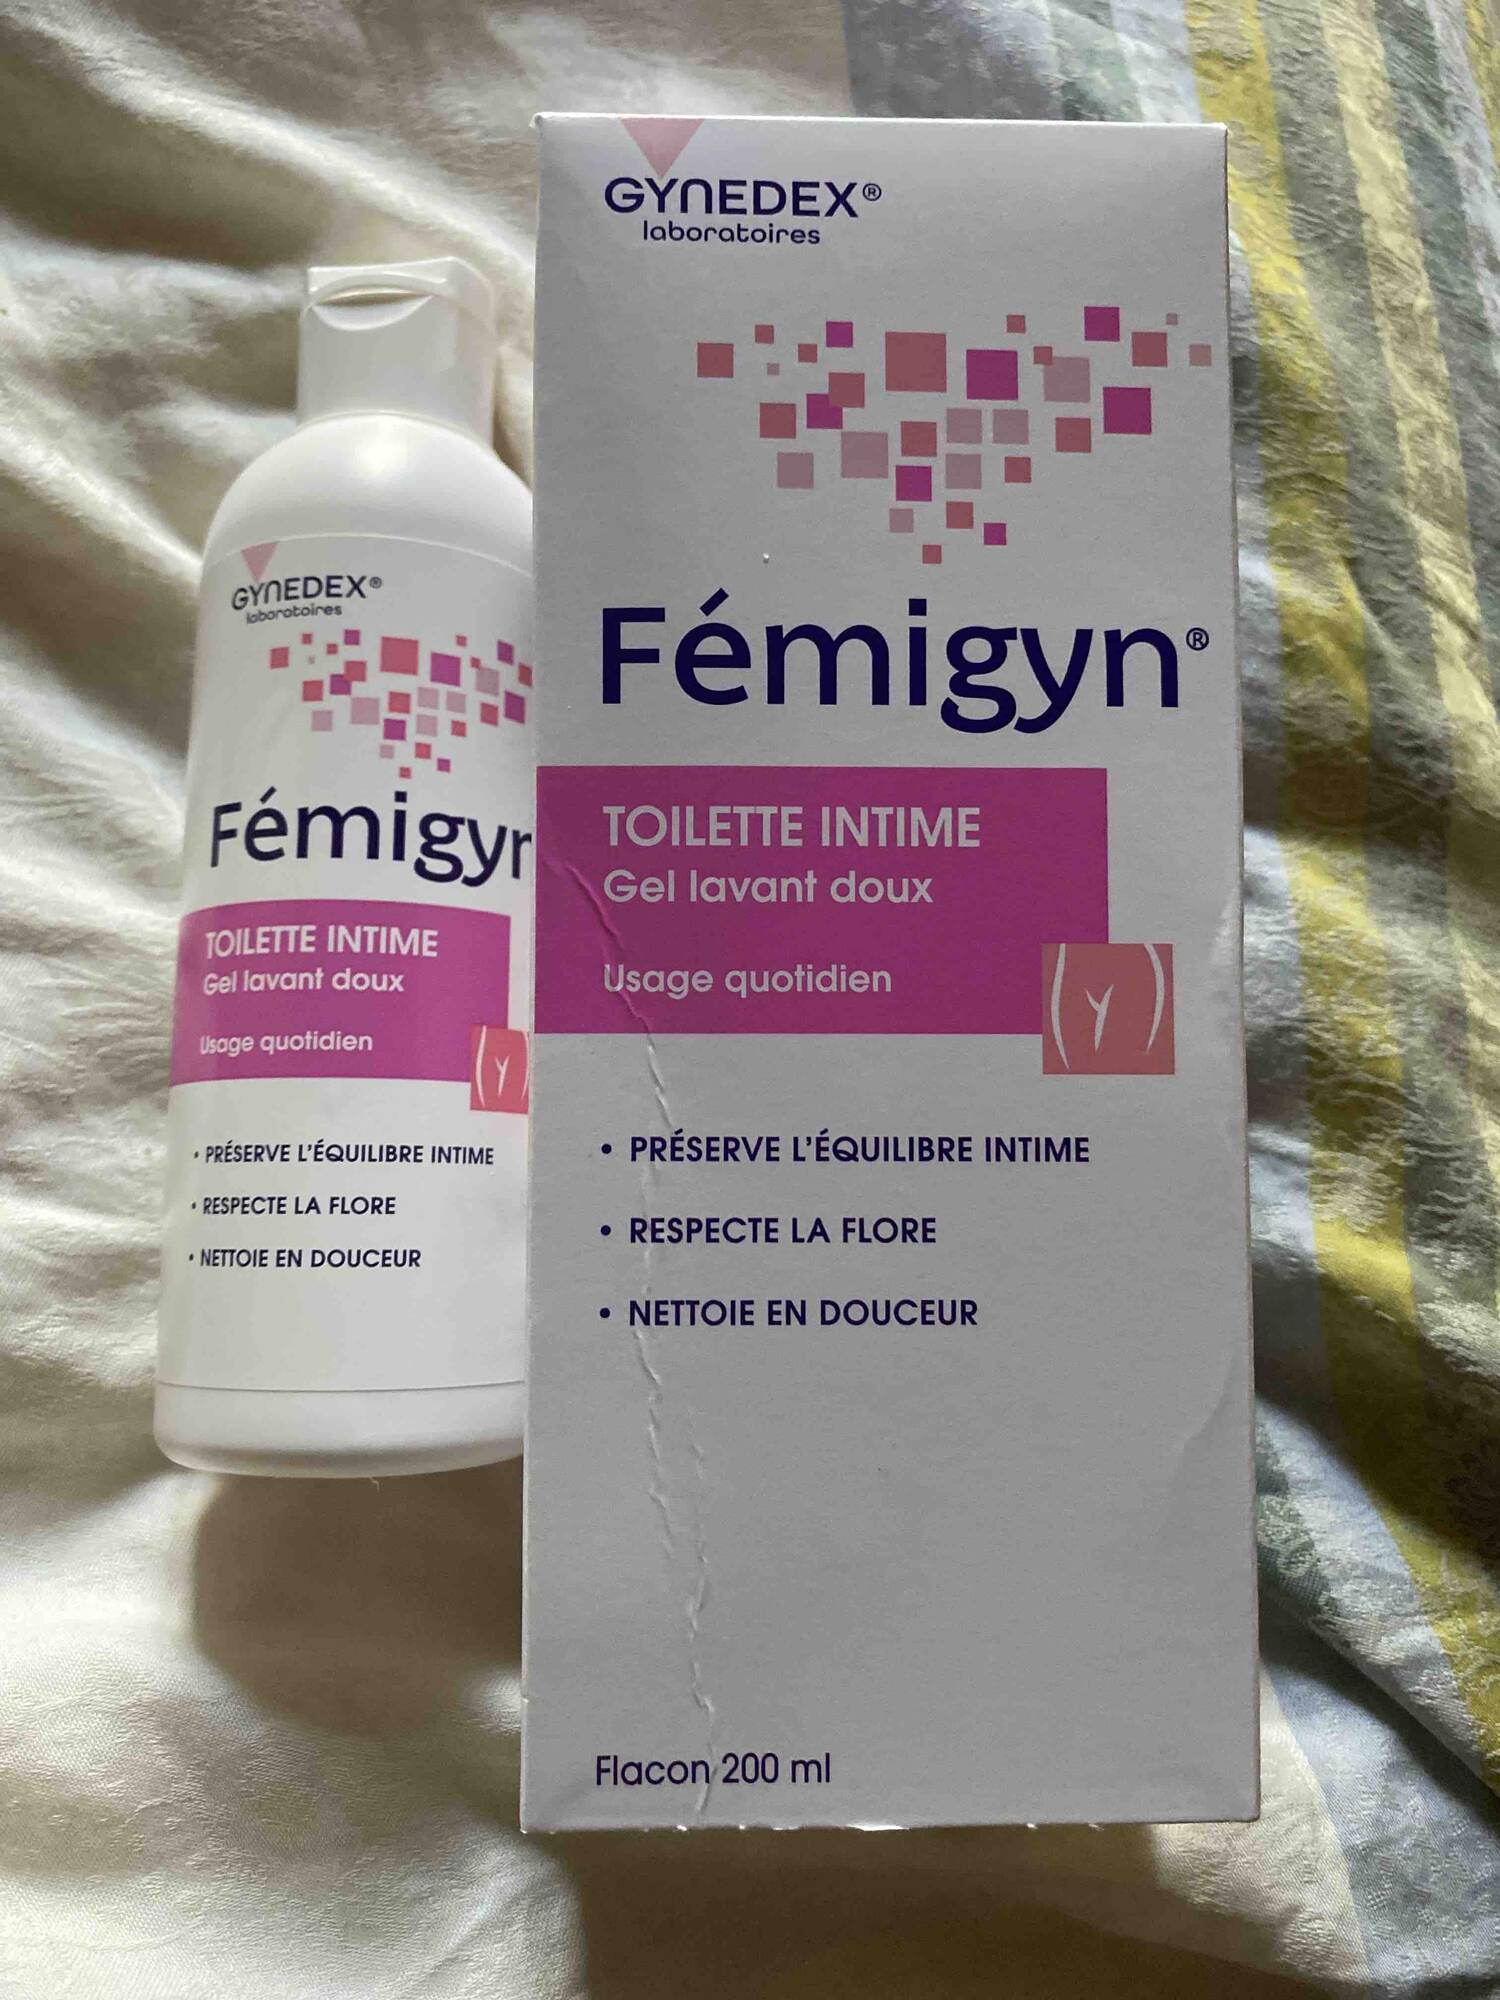 GYNEDEX - Fémigyn - Toilette intime, gel lavant doux